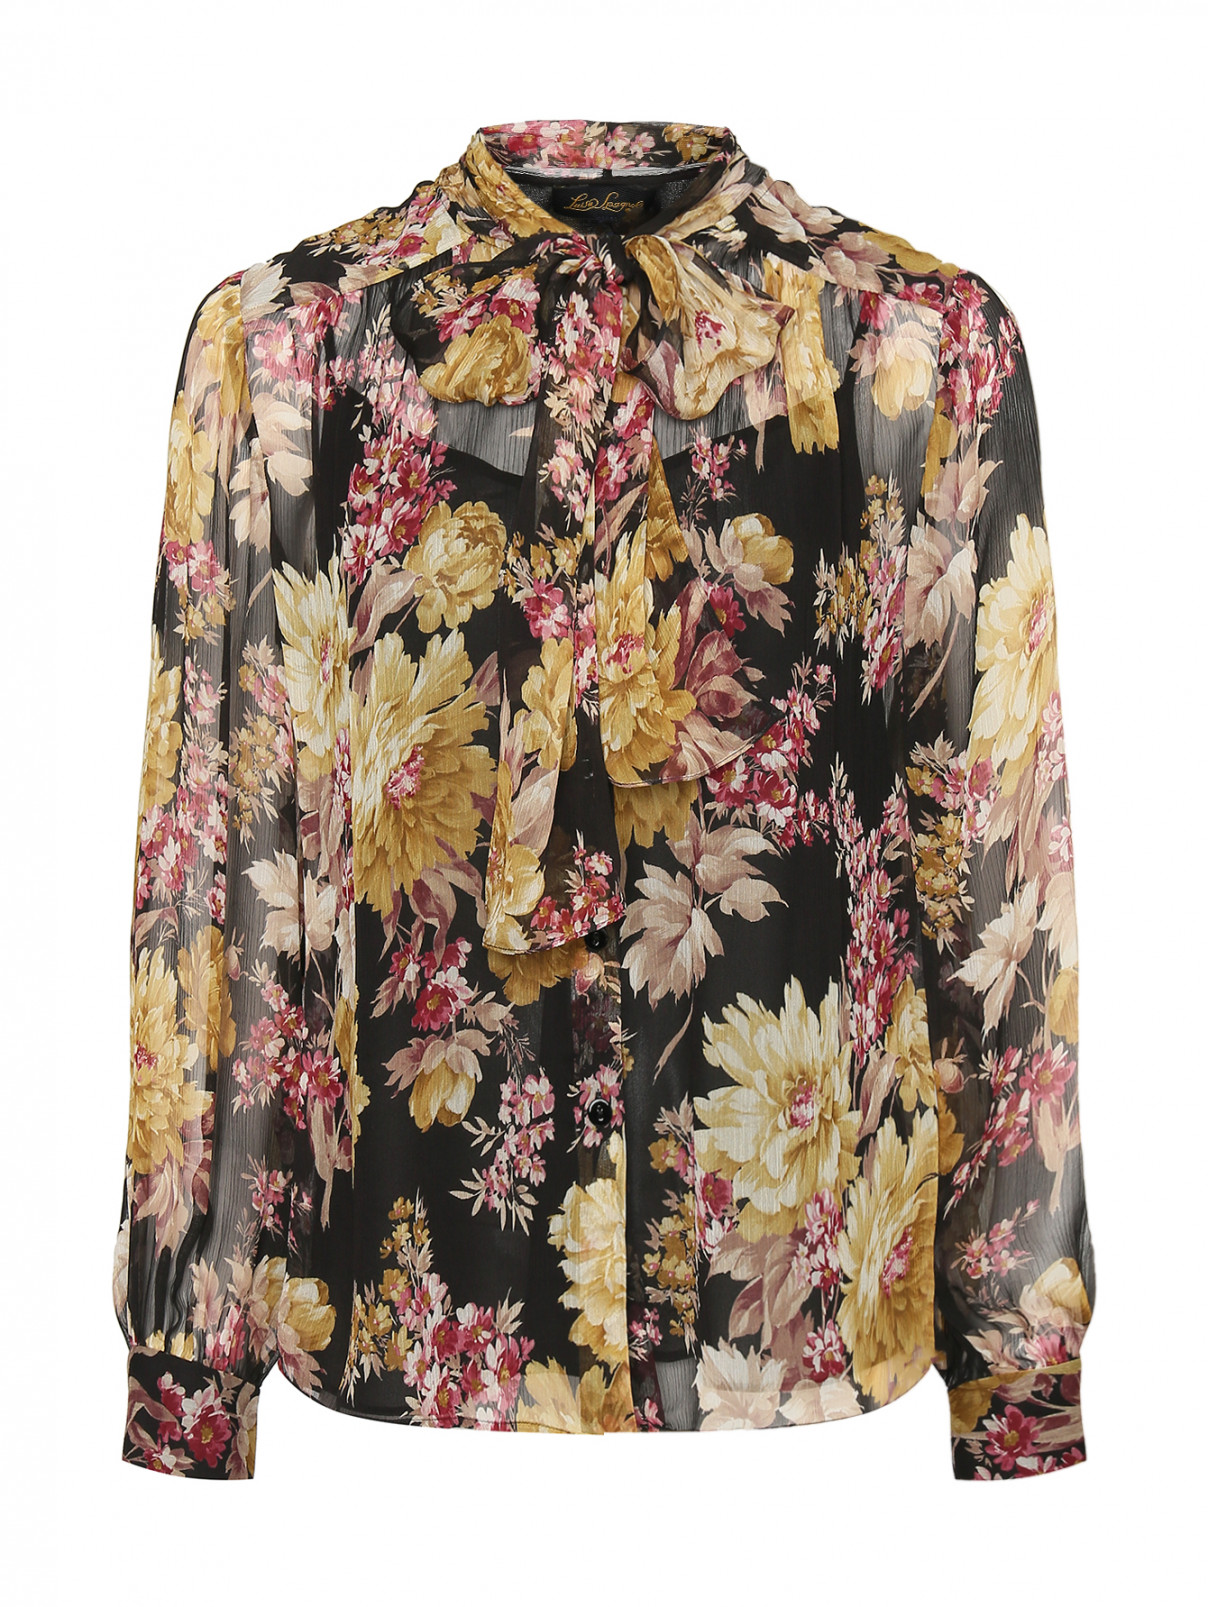 Блуза из шелка с цветами Luisa Spagnoli  –  Общий вид  – Цвет:  Узор